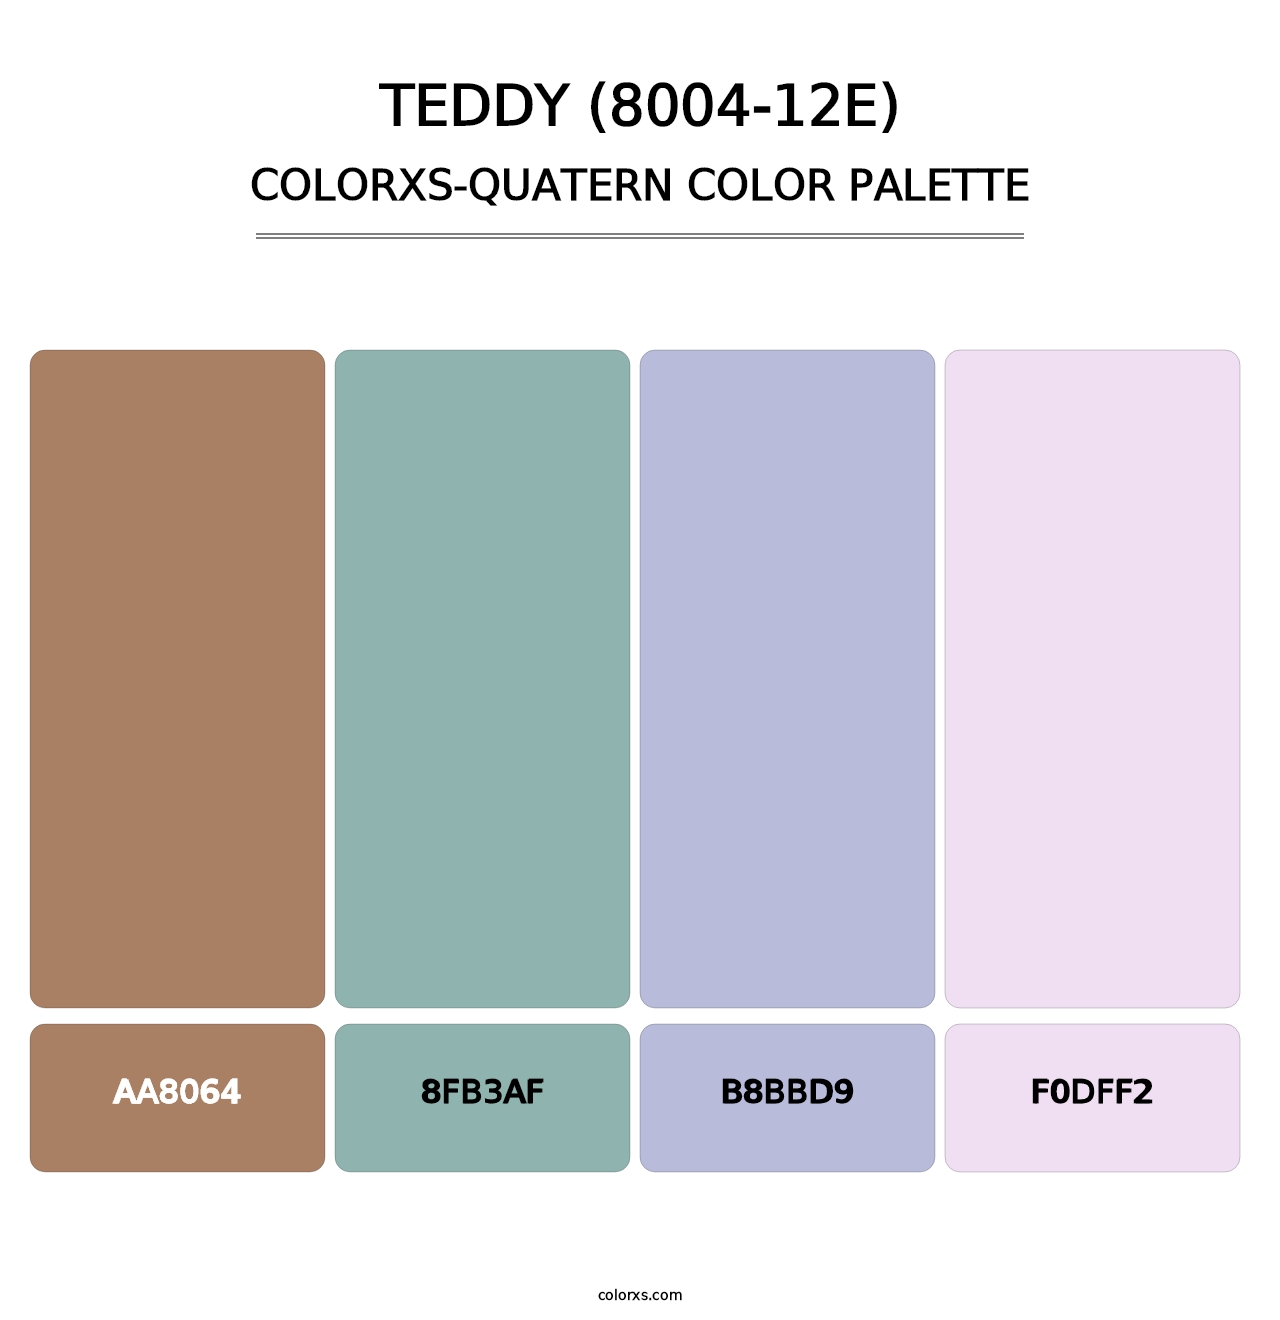 Teddy (8004-12E) - Colorxs Quatern Palette